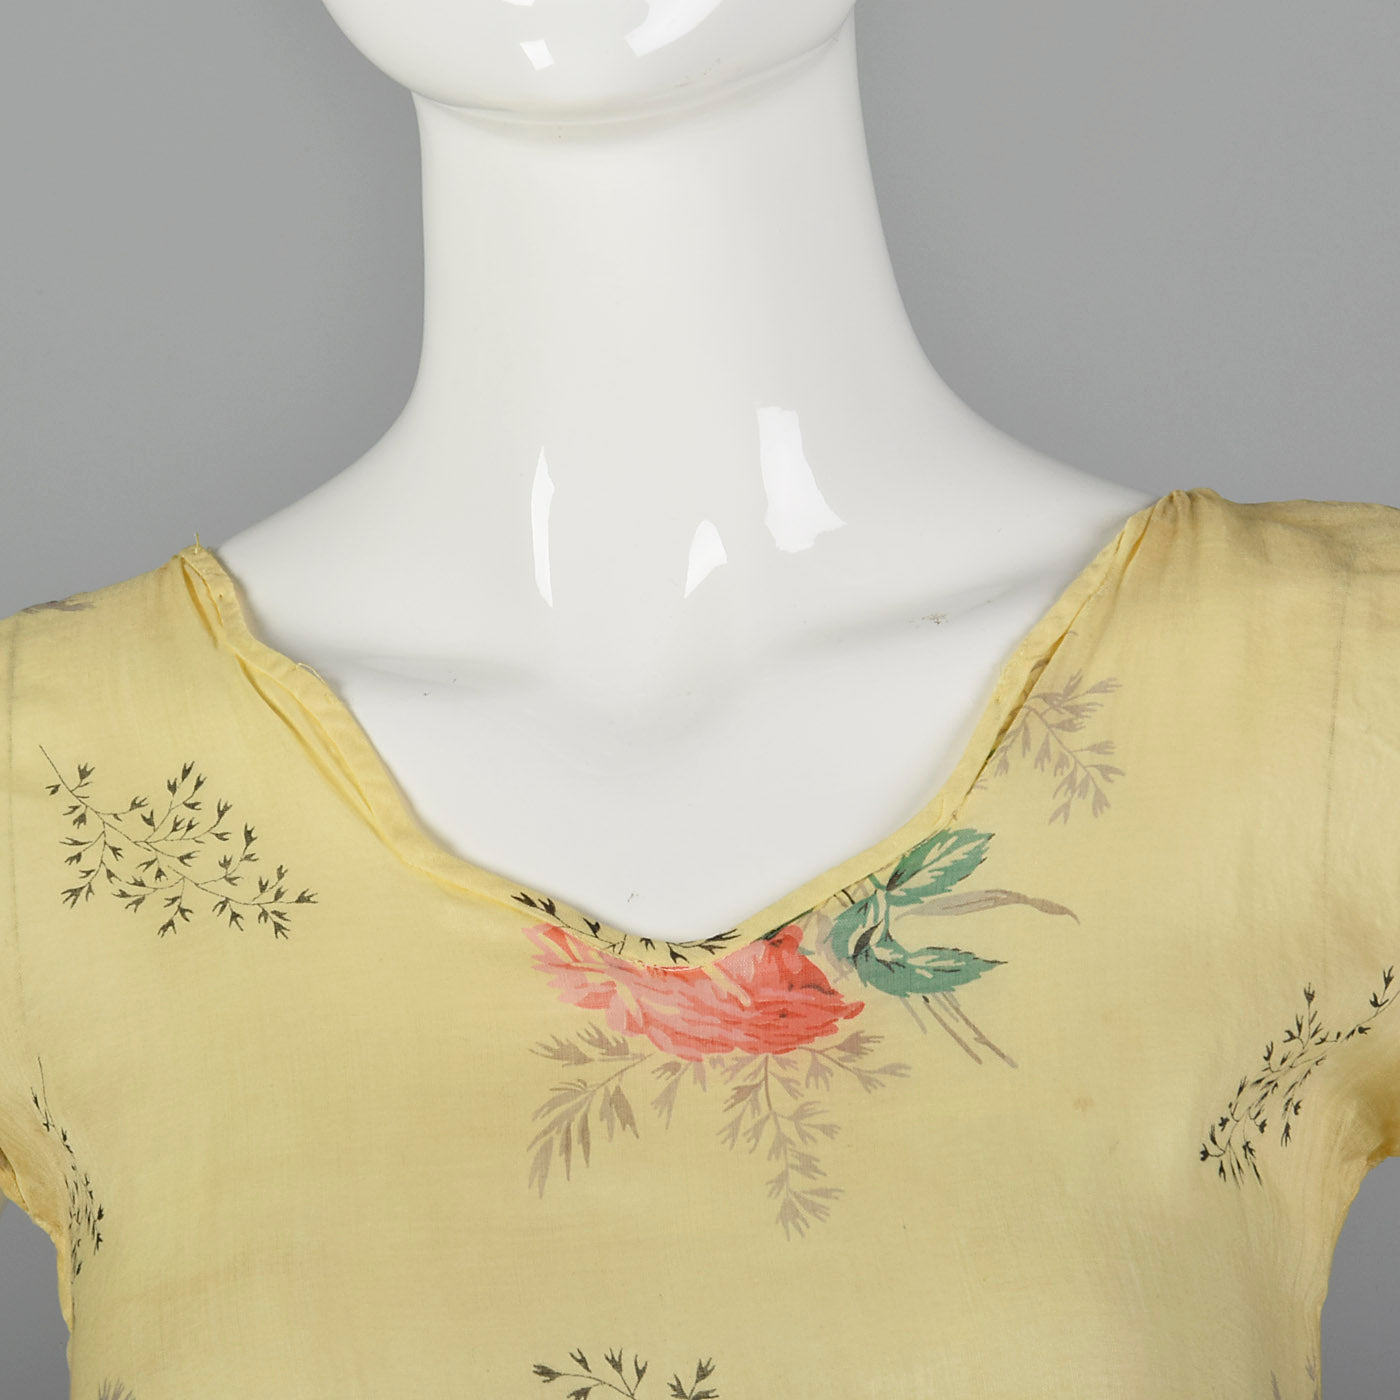 1930s Sheer Yellow Day Dress